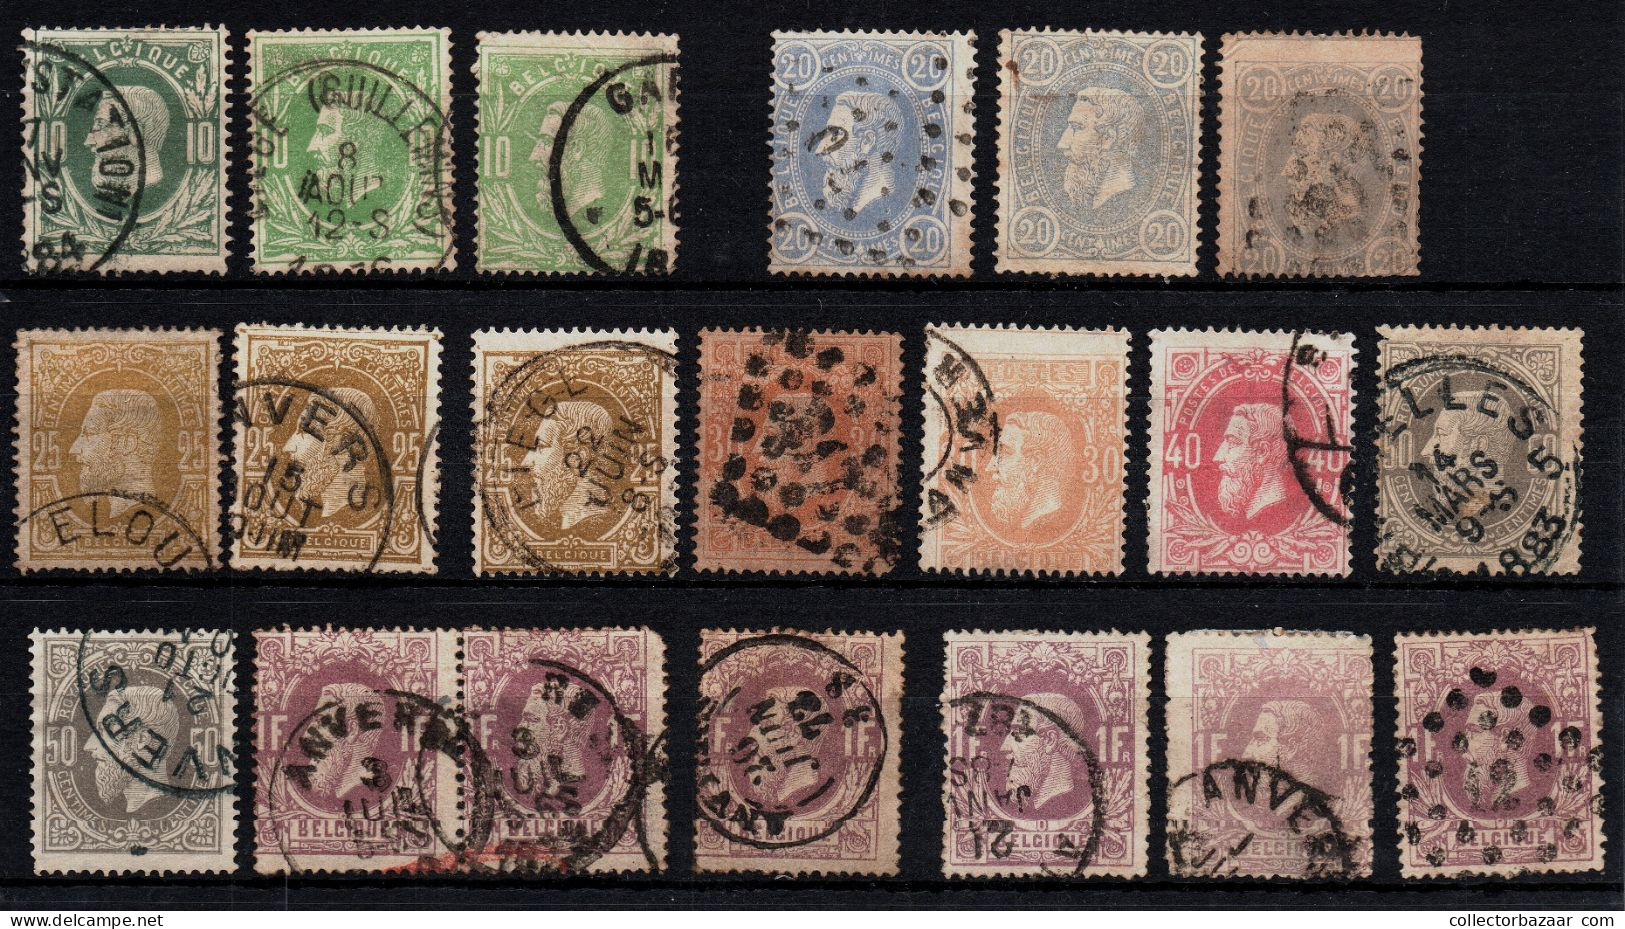 Belgium Belgique Used Key Stamps Postmarks Varieties SOTN Catalogue Value +$1200 - Verzamelingen